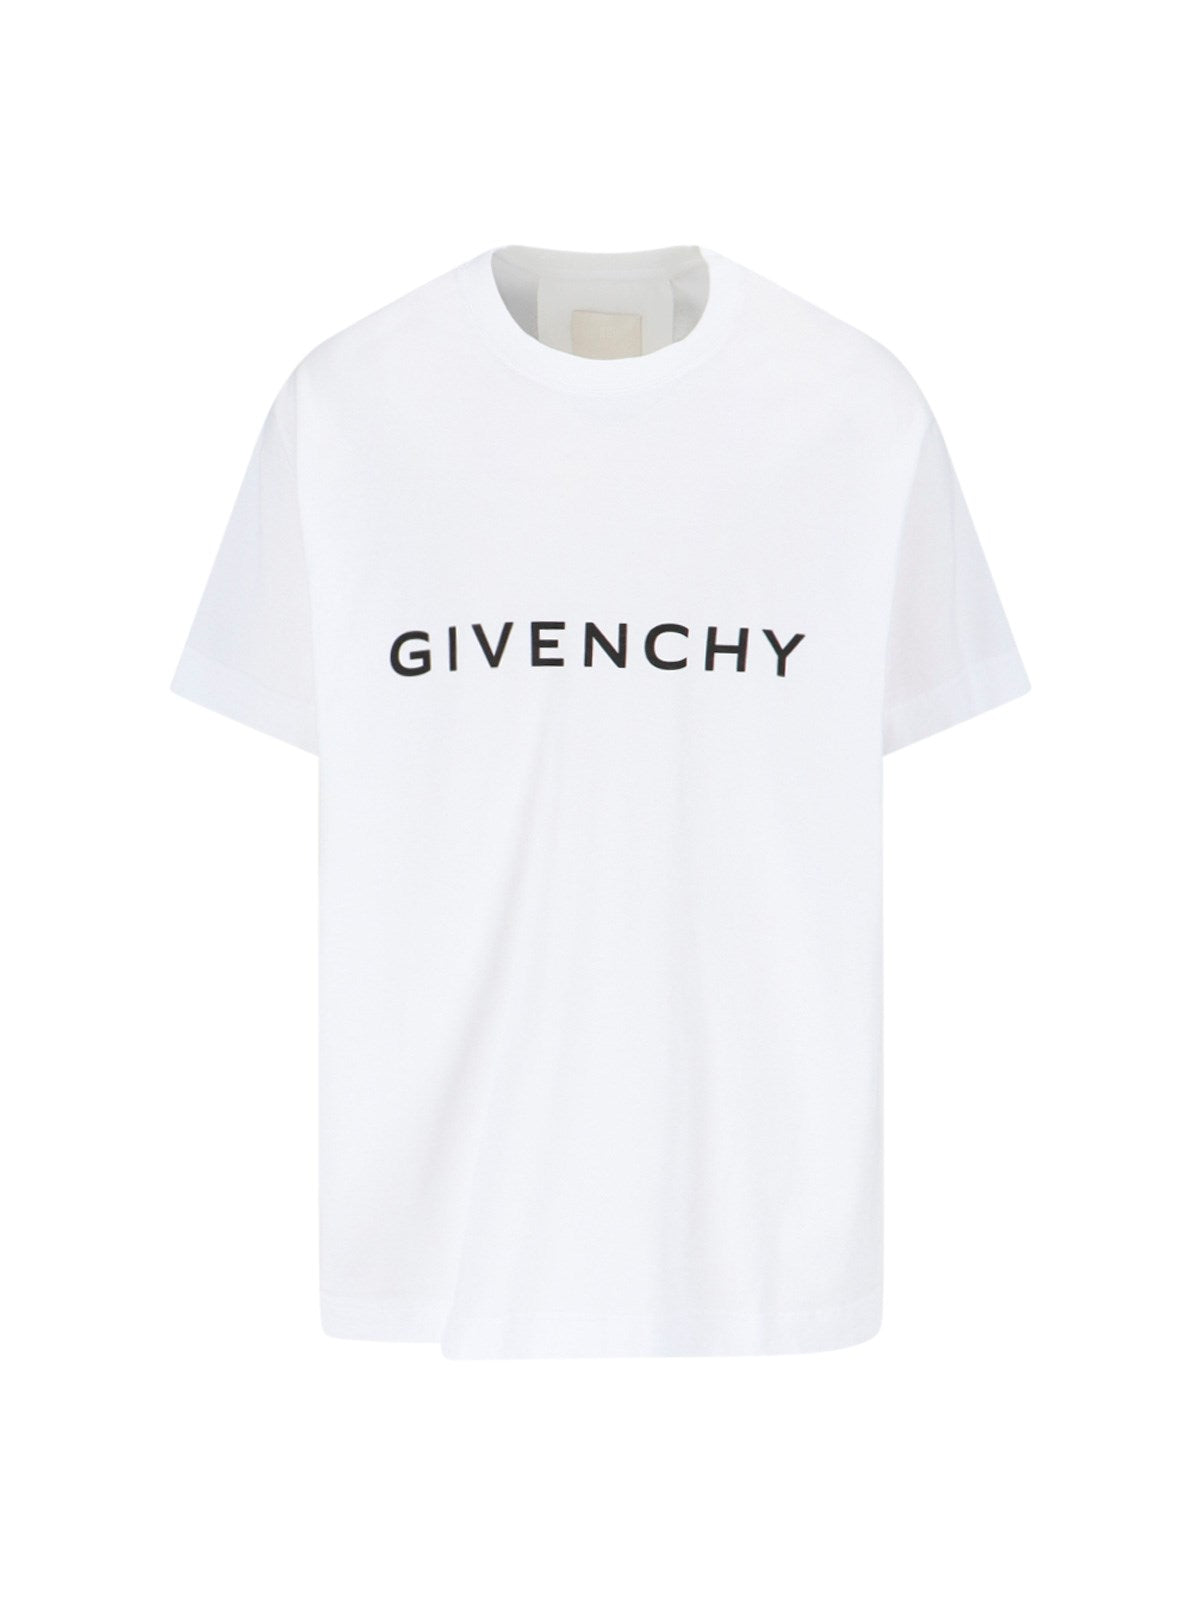 Givenchy T-Shirt logo-t-shirt-Givenchy-T-shirt logo Givenchy, in cotone bianco, girocollo, maniche corte, stampa logo lettering nero fronte, stampa "4g" nera retro, orlo dritto.-Dresso